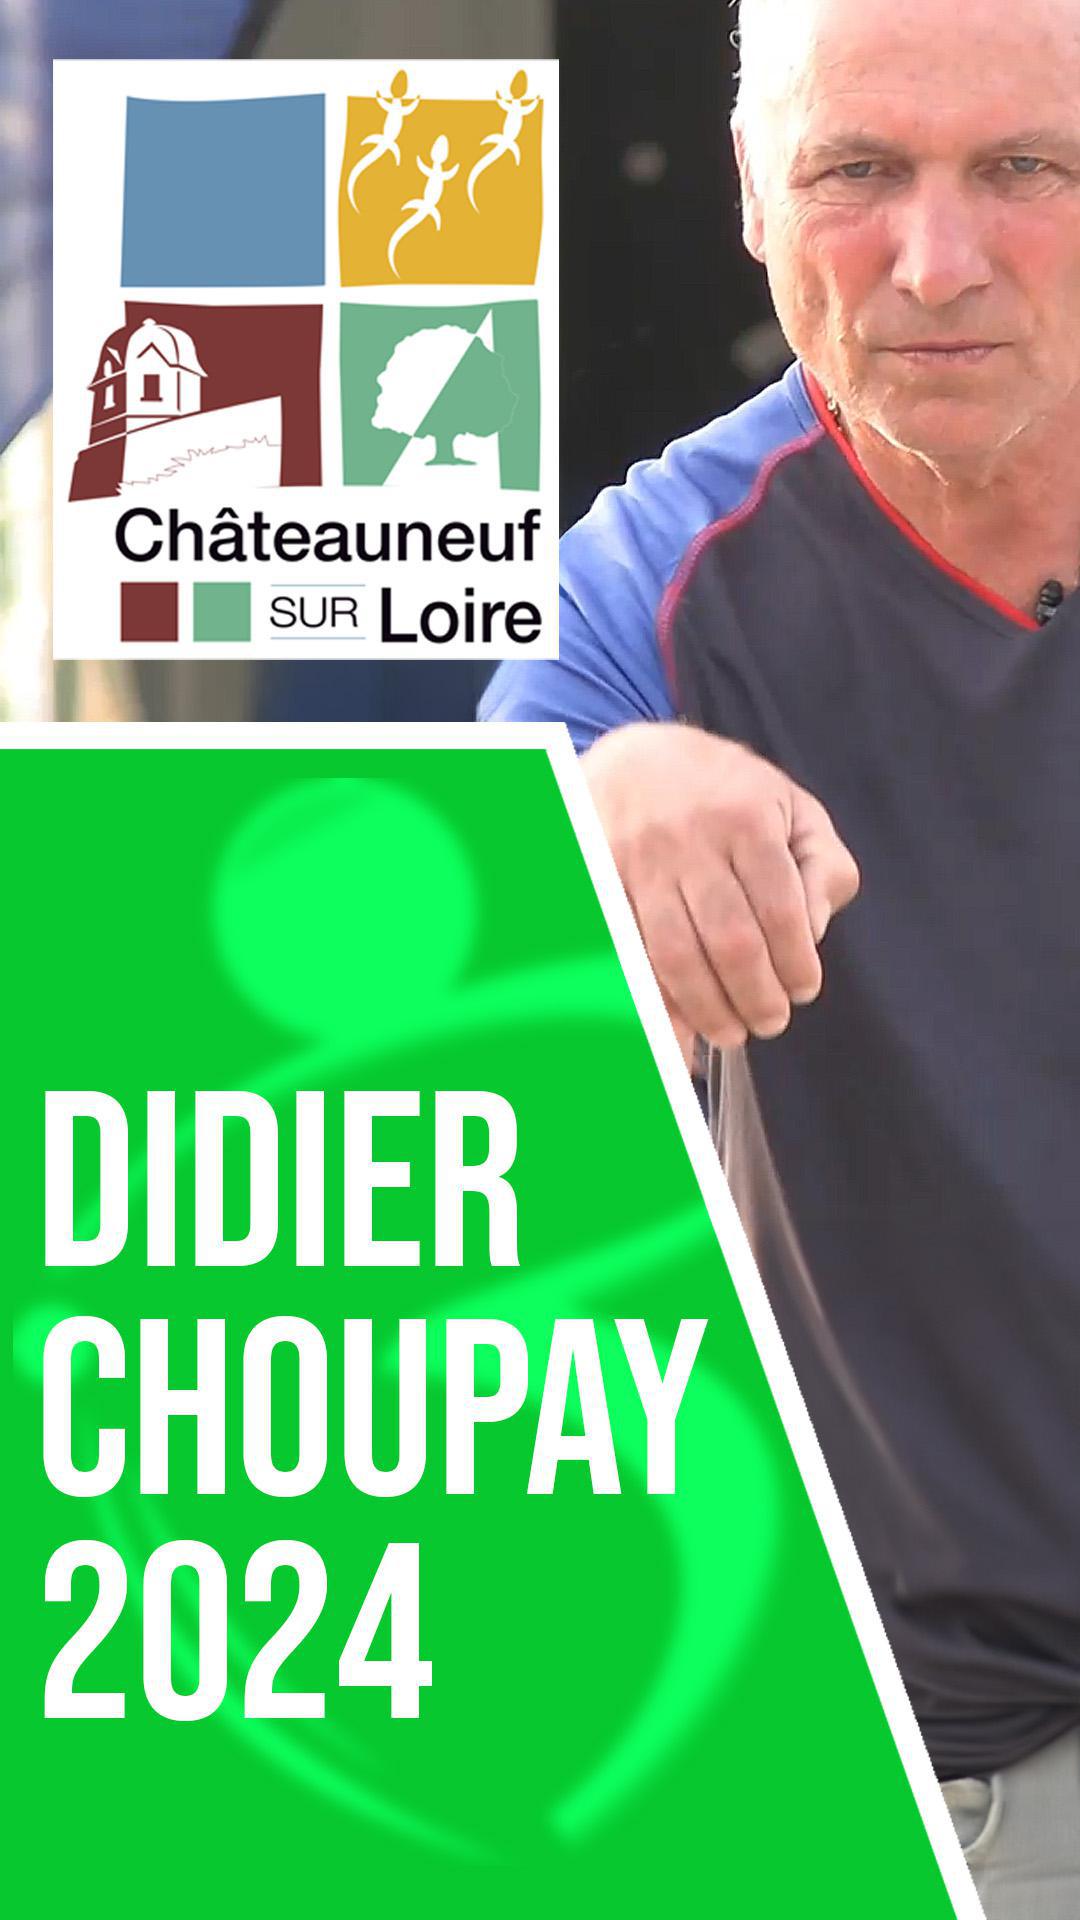 Didier Choupay : Les légendes de la pétanque ne meurent jamais, carreaux à Châteauneuf-sur-Loire